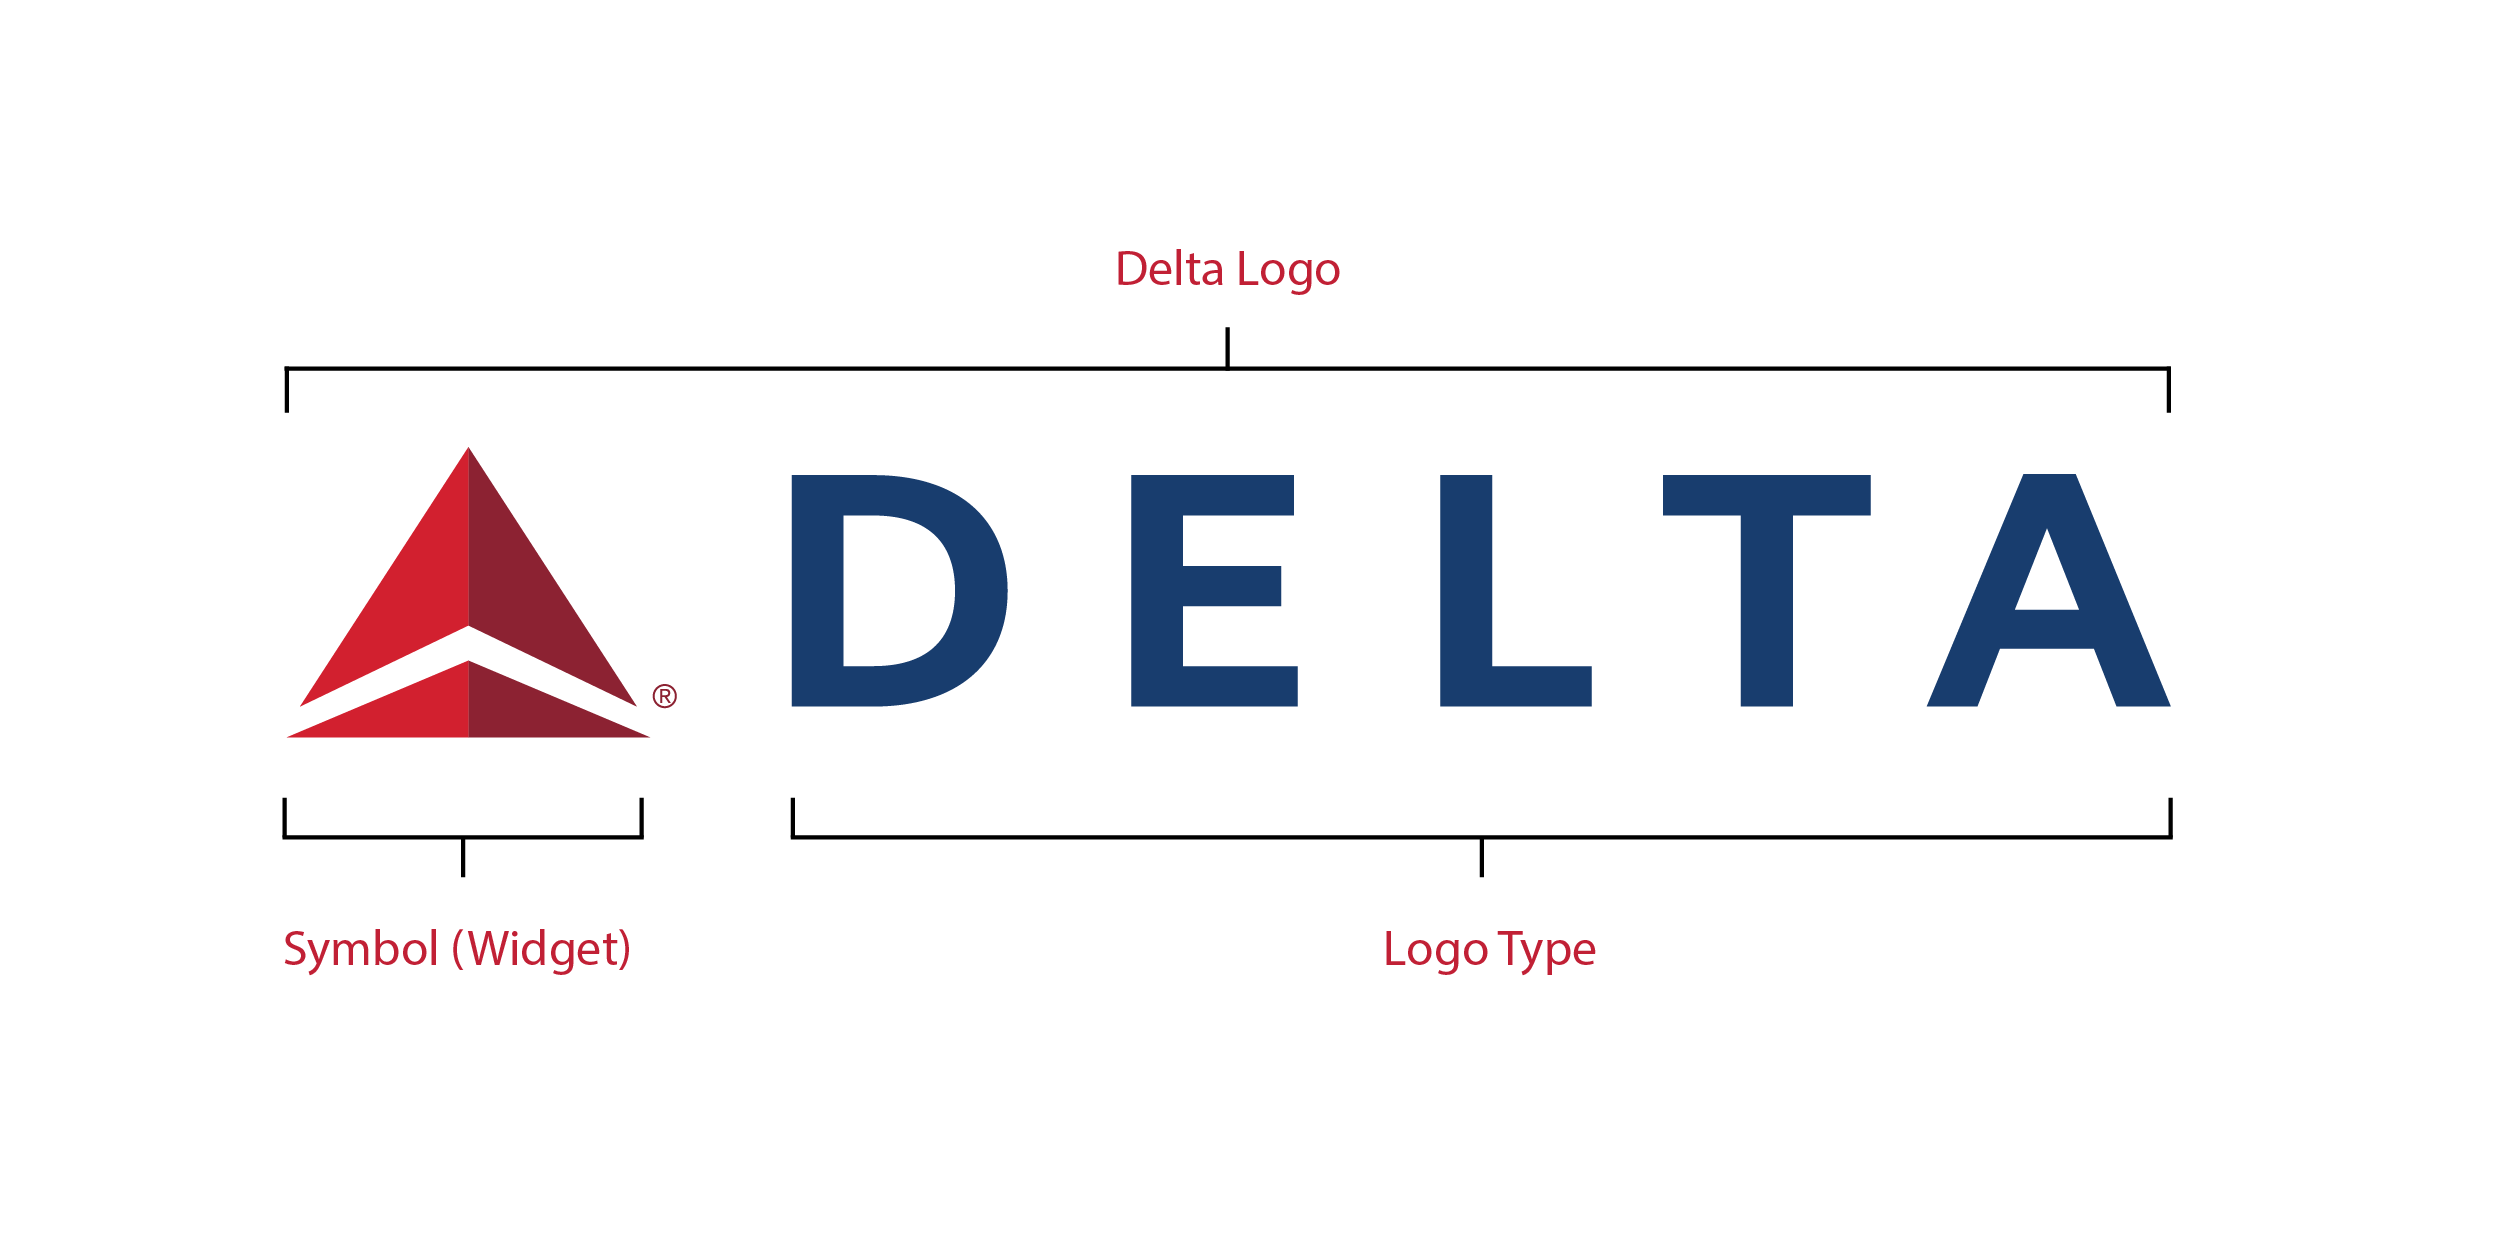 Delta Logo - Delta Logos. Delta News Hub